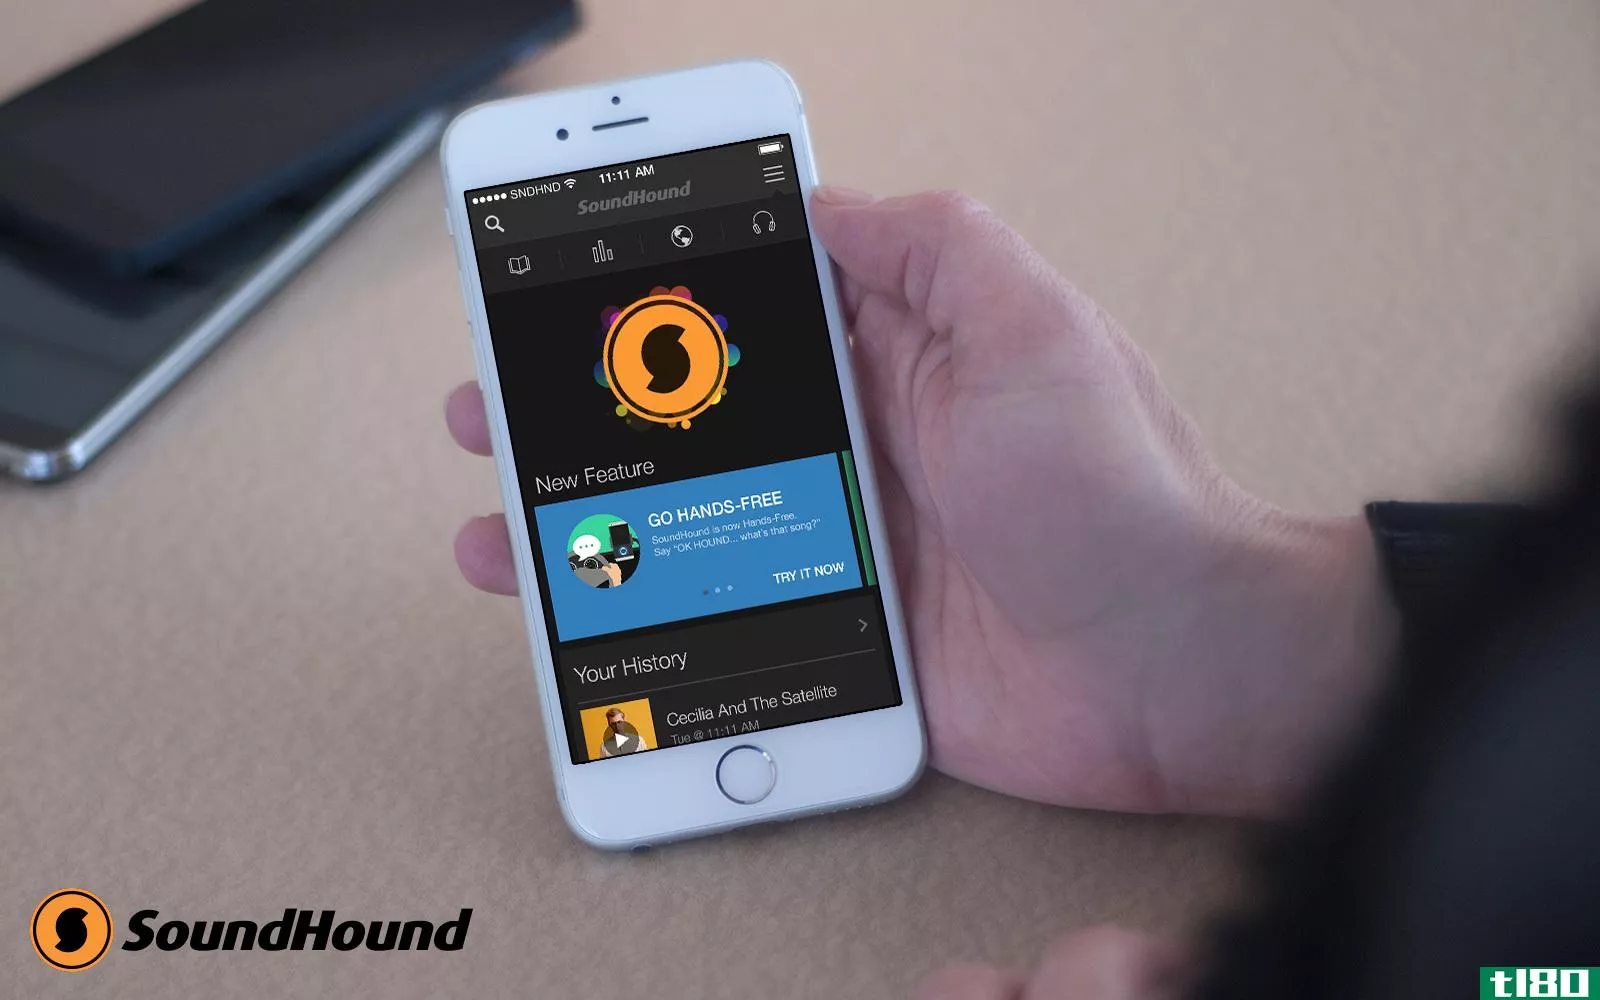 soundhound增加了强大的语音控制功能，让您可以免提聆听音乐